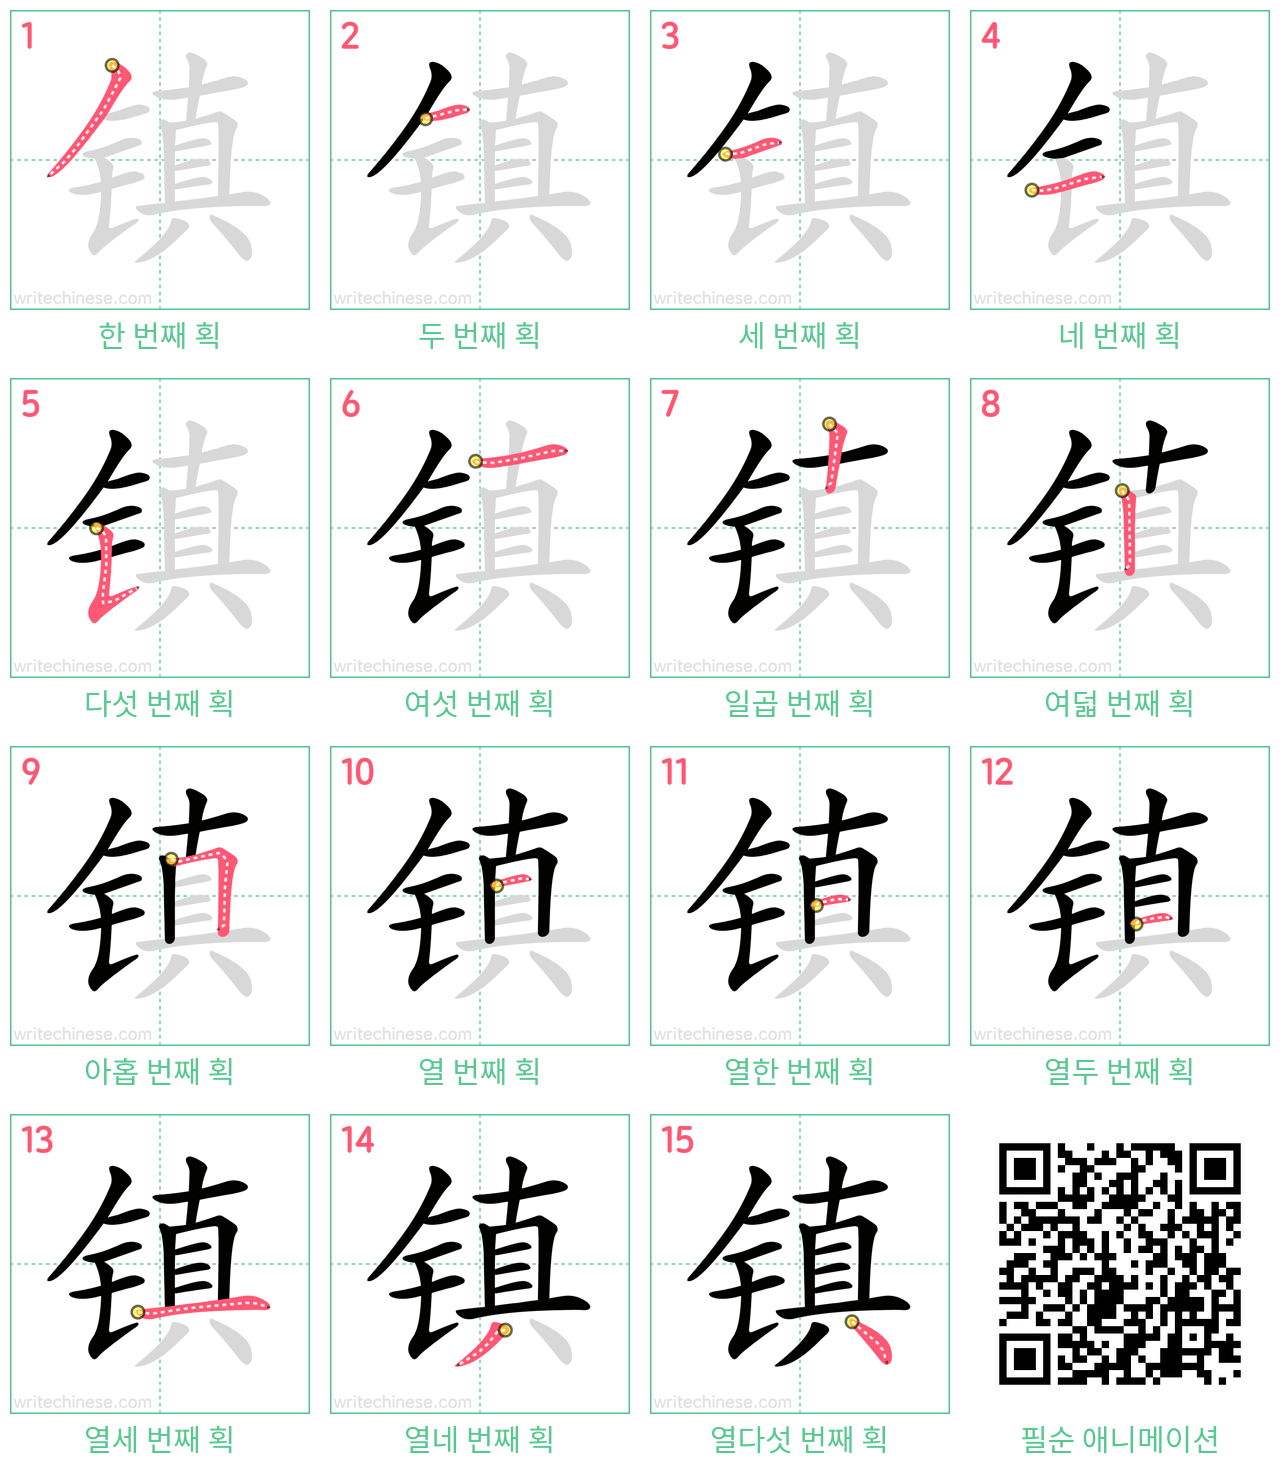 镇 step-by-step stroke order diagrams